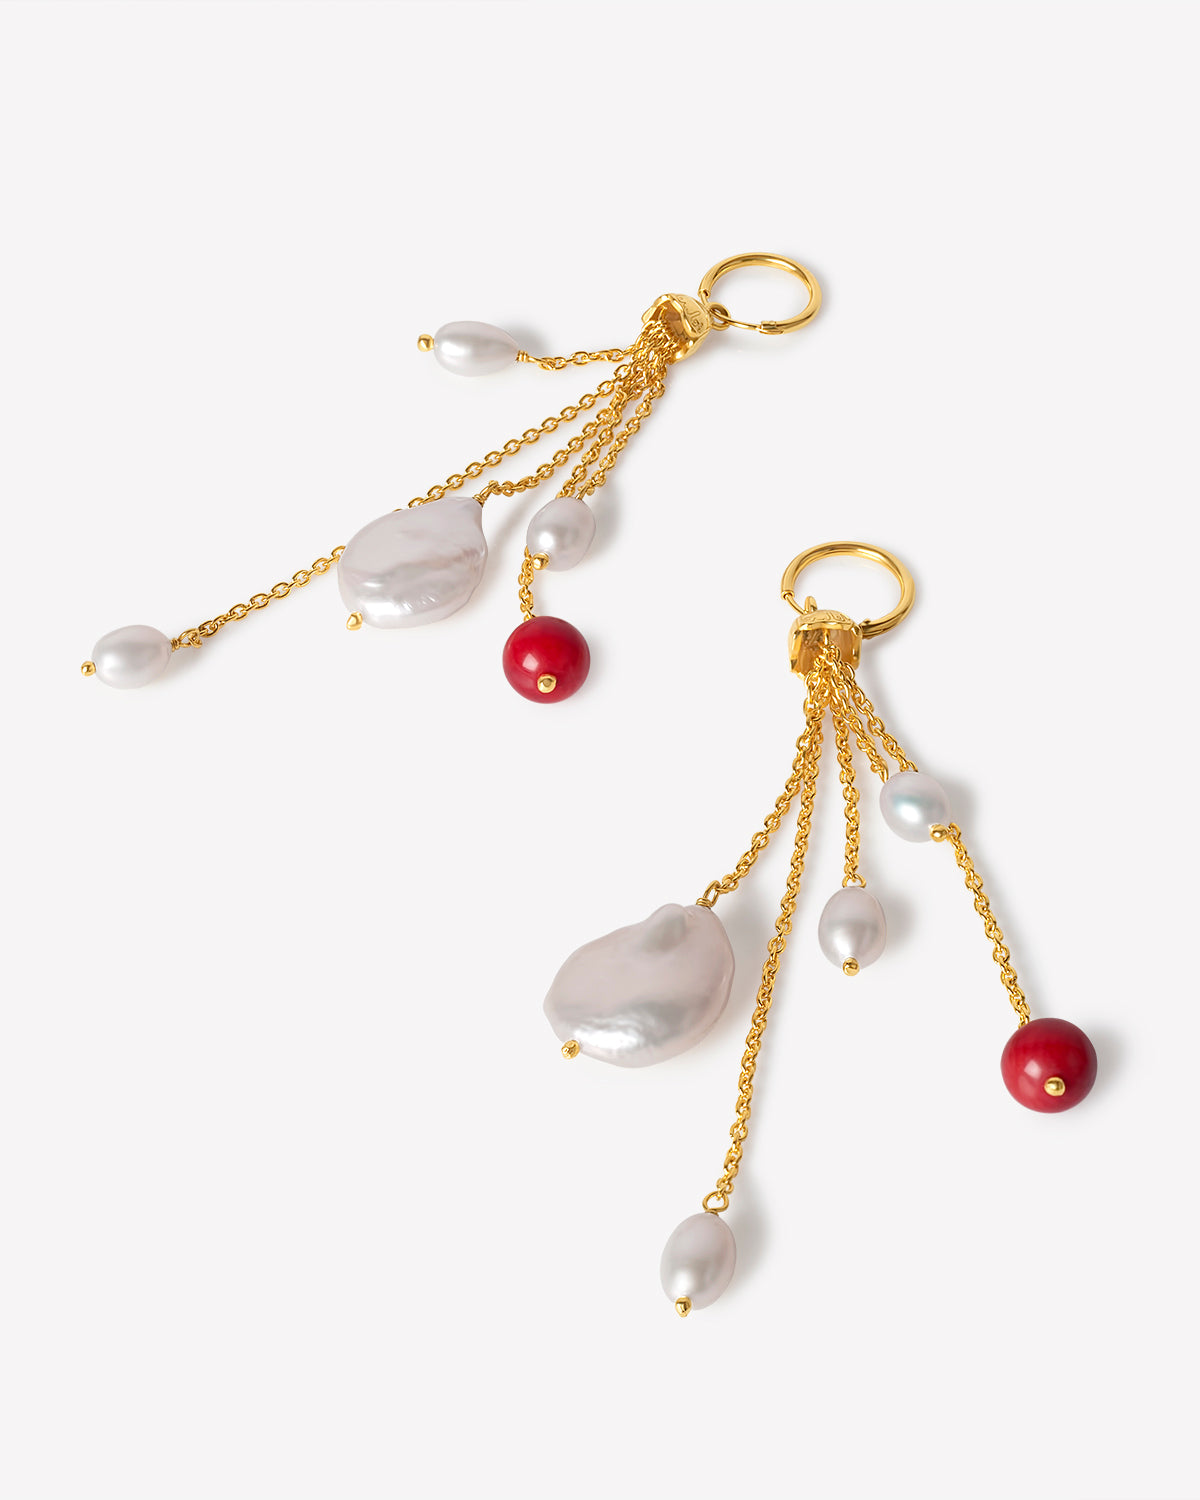 5-Strand Chain Tassel Huggie Hoop Earrings with Freshwater Pearls